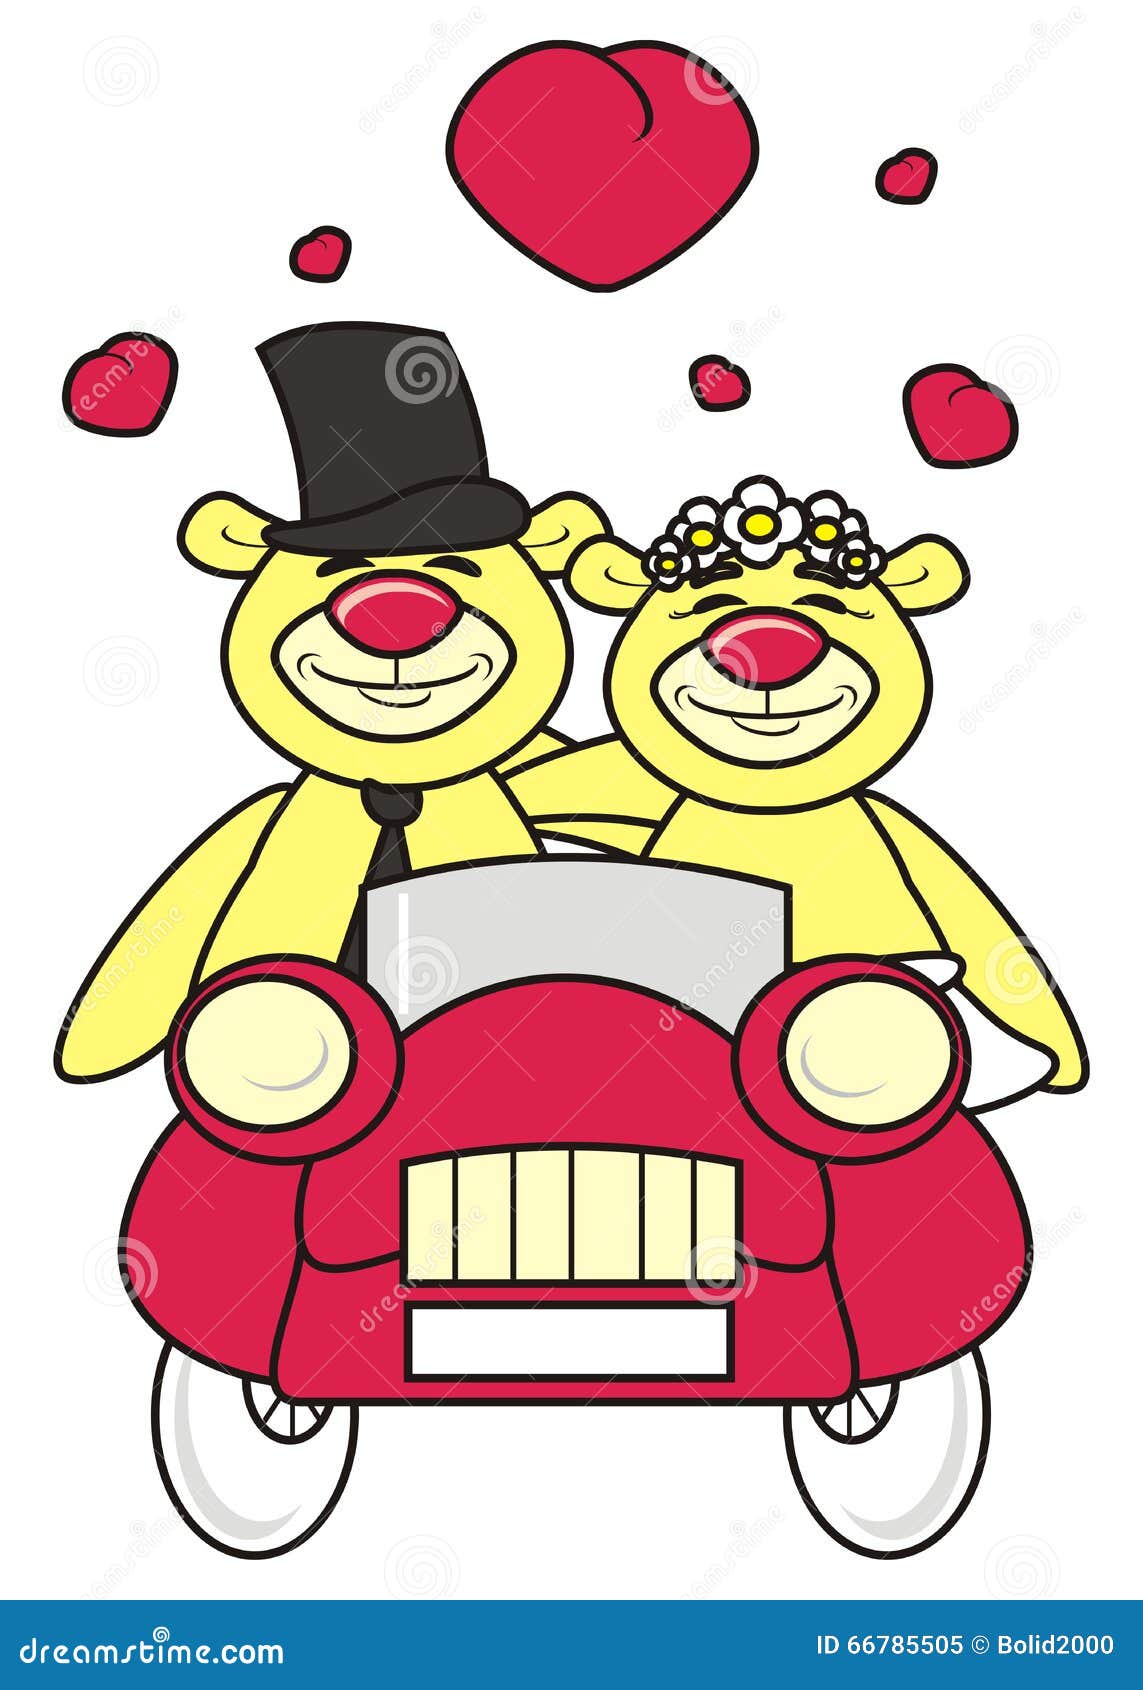 teddy bear bride and groom clipart - photo #24